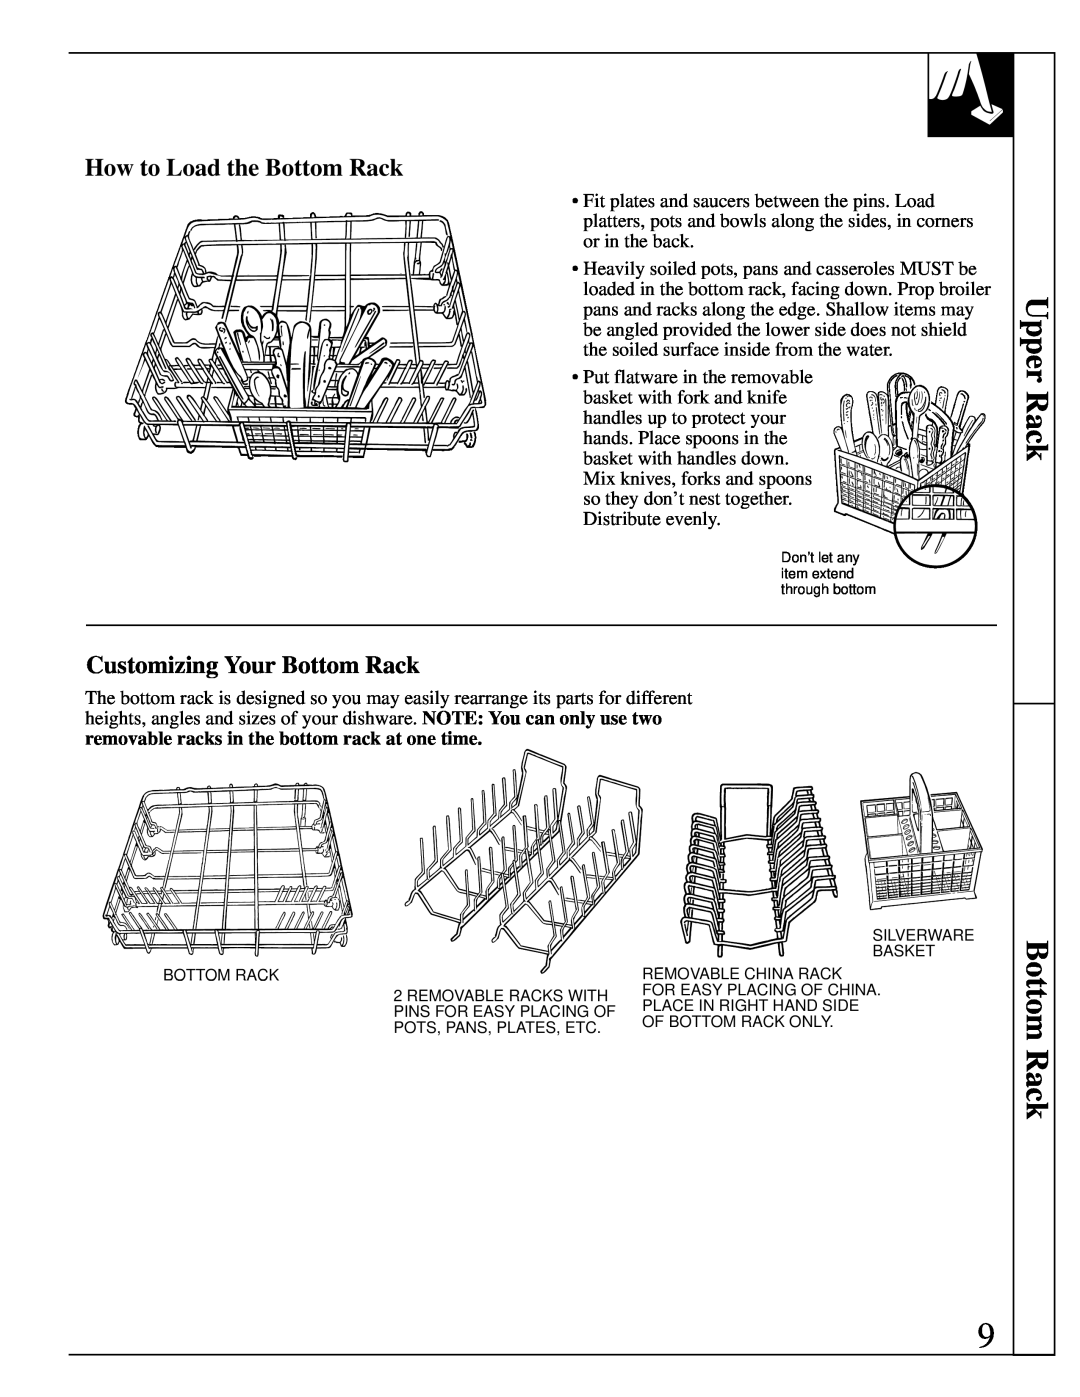 GE Monogram ZBD4800 manual Upper Rack Bottom Rack, How to Load the Bottom Rack, Customizing Your Bottom Rack 